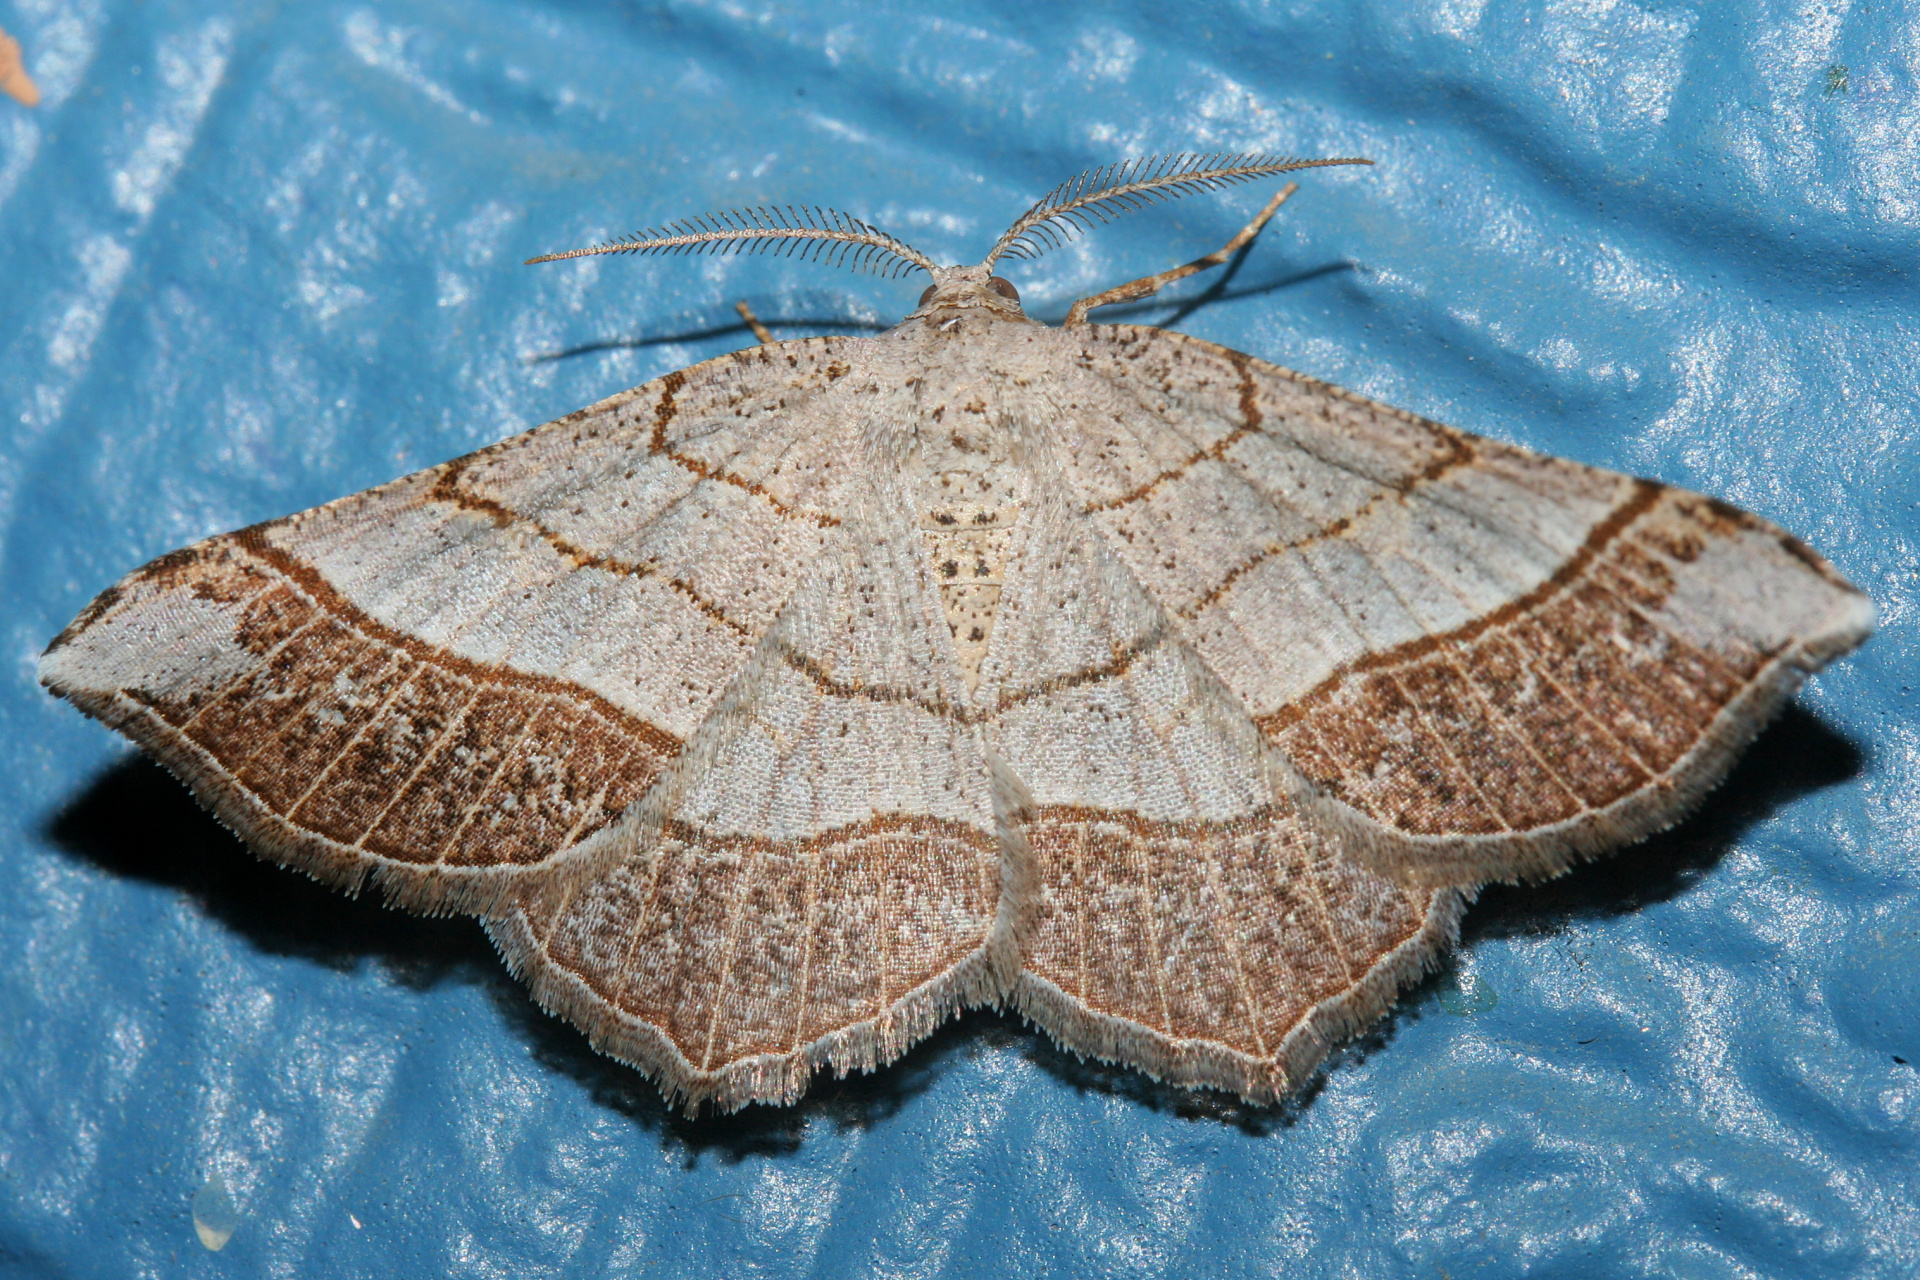 Eumacaria madopata (latiferrugata) (Podróże » USA: Epopeja Czejeńska » Zwierzęta » Owady » Motyle i ćmy » Geometridae)